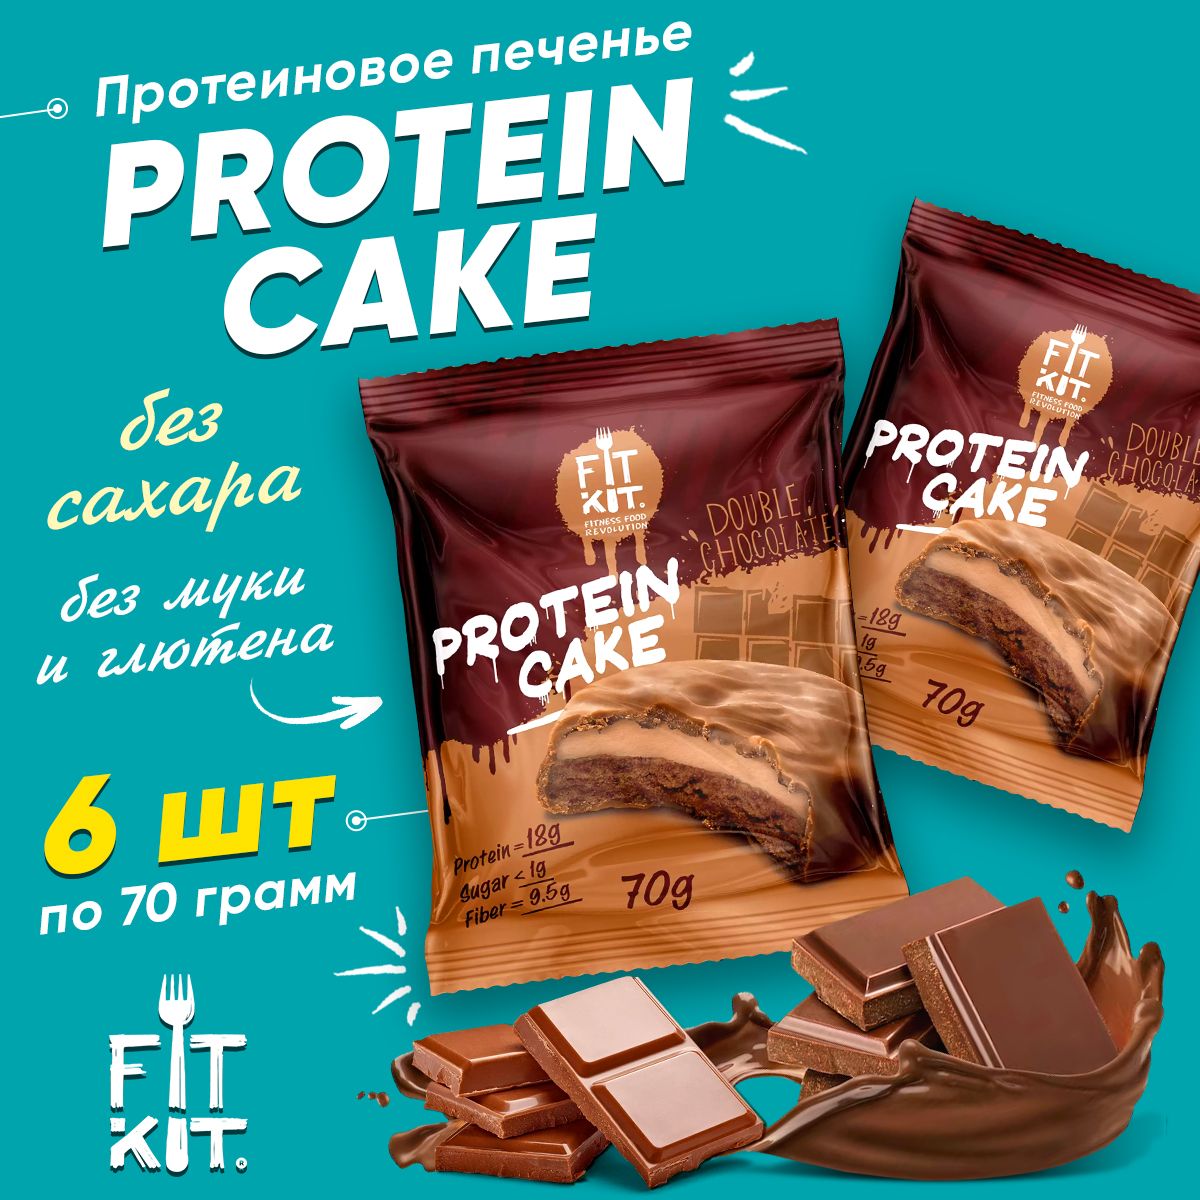 Fit Kit Protein Cake, Фит Кит Протеиновое печенье с суфле без сахара для похудения, упаковка 6шт по 70 г со вкусом двойного шоколада, Спортивное питание для взрослых